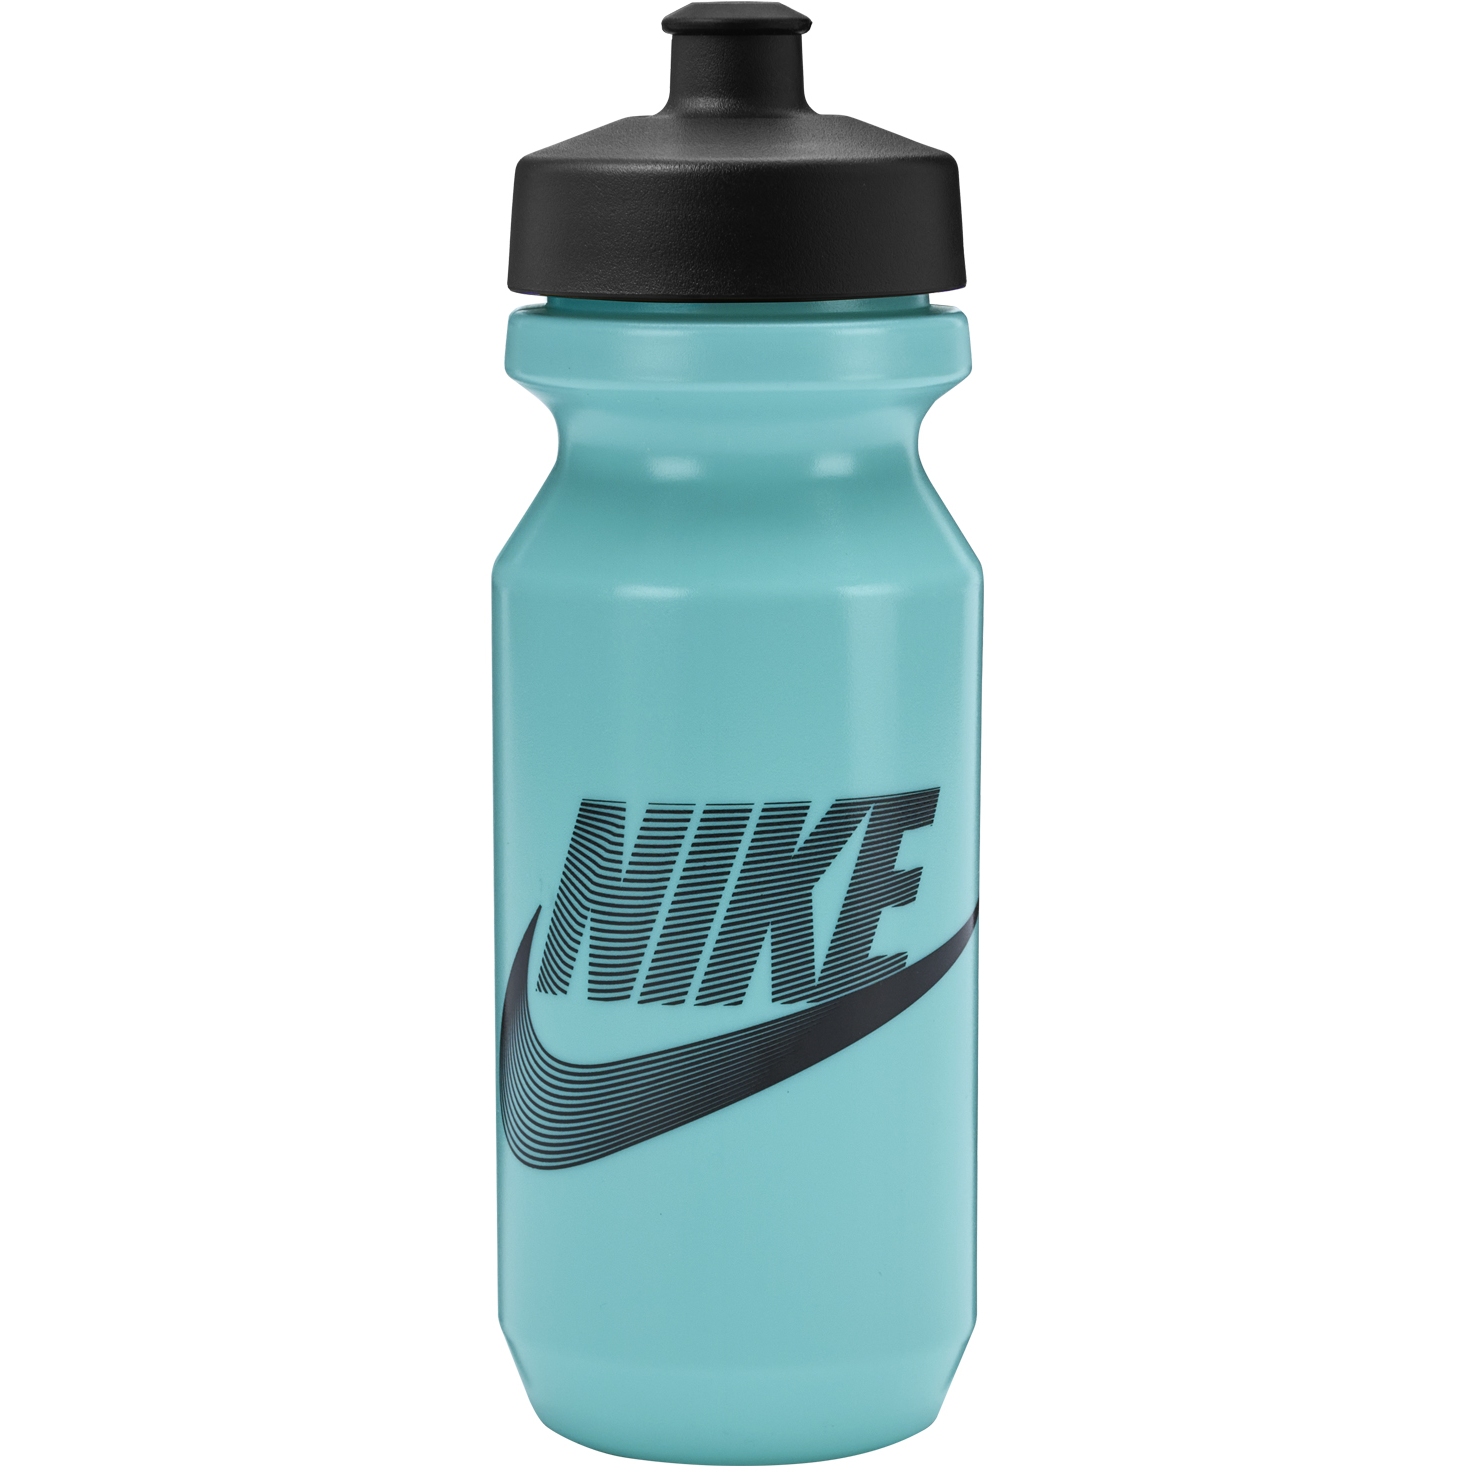 Produktbild von Nike Big Mouth Trinkflasche 2.0 22 oz Graphic/650ml - light aqua/black/black 421